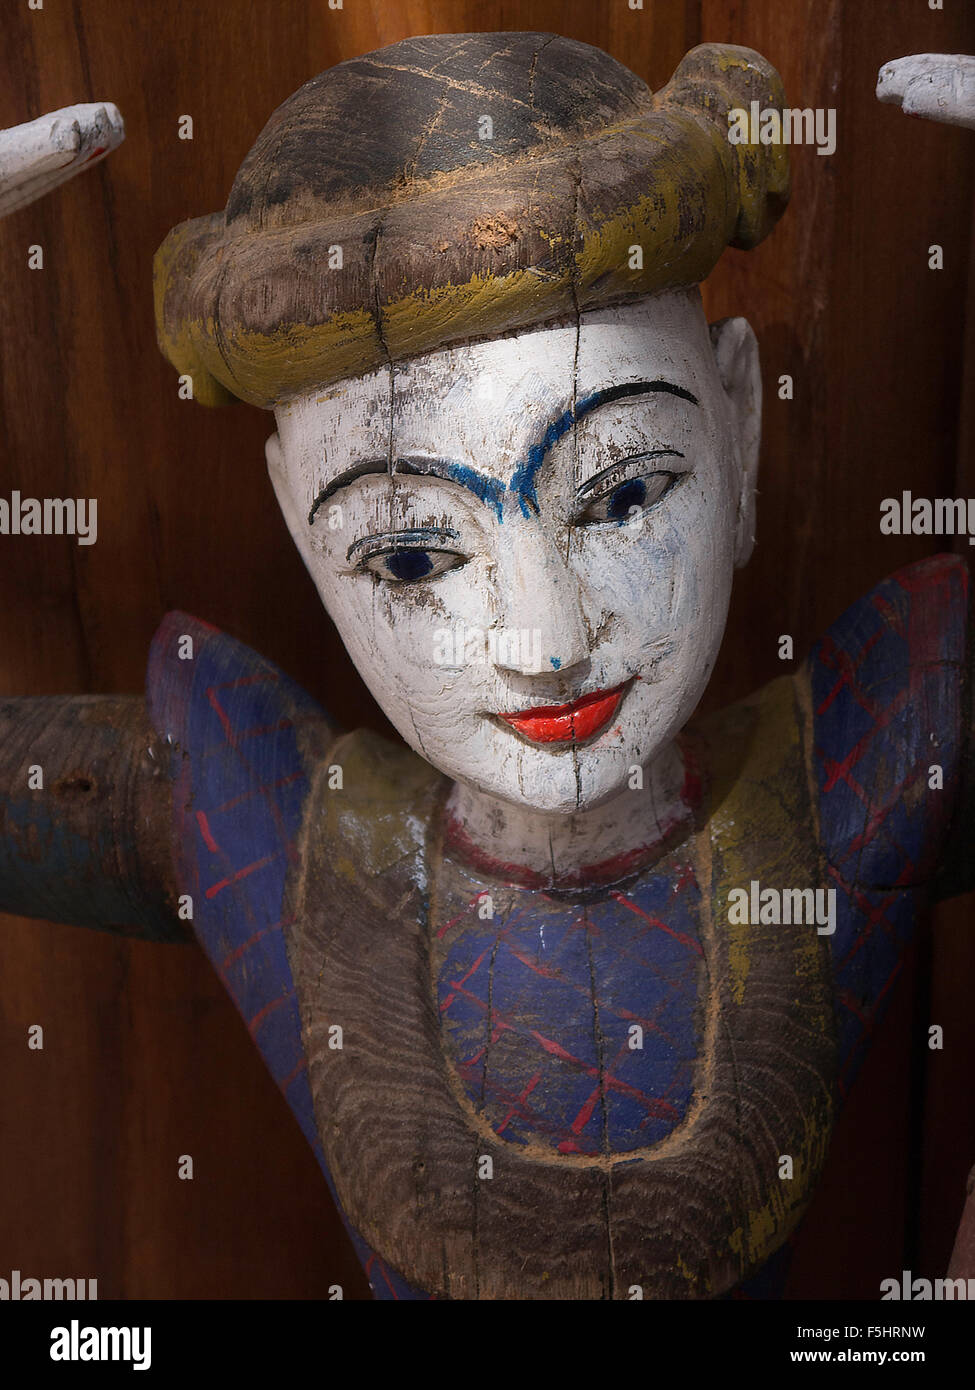 En bois peint en blanc traditionnel Thaï visage avec des lèvres rouges et le haut du corps de la sculpture . Banque D'Images